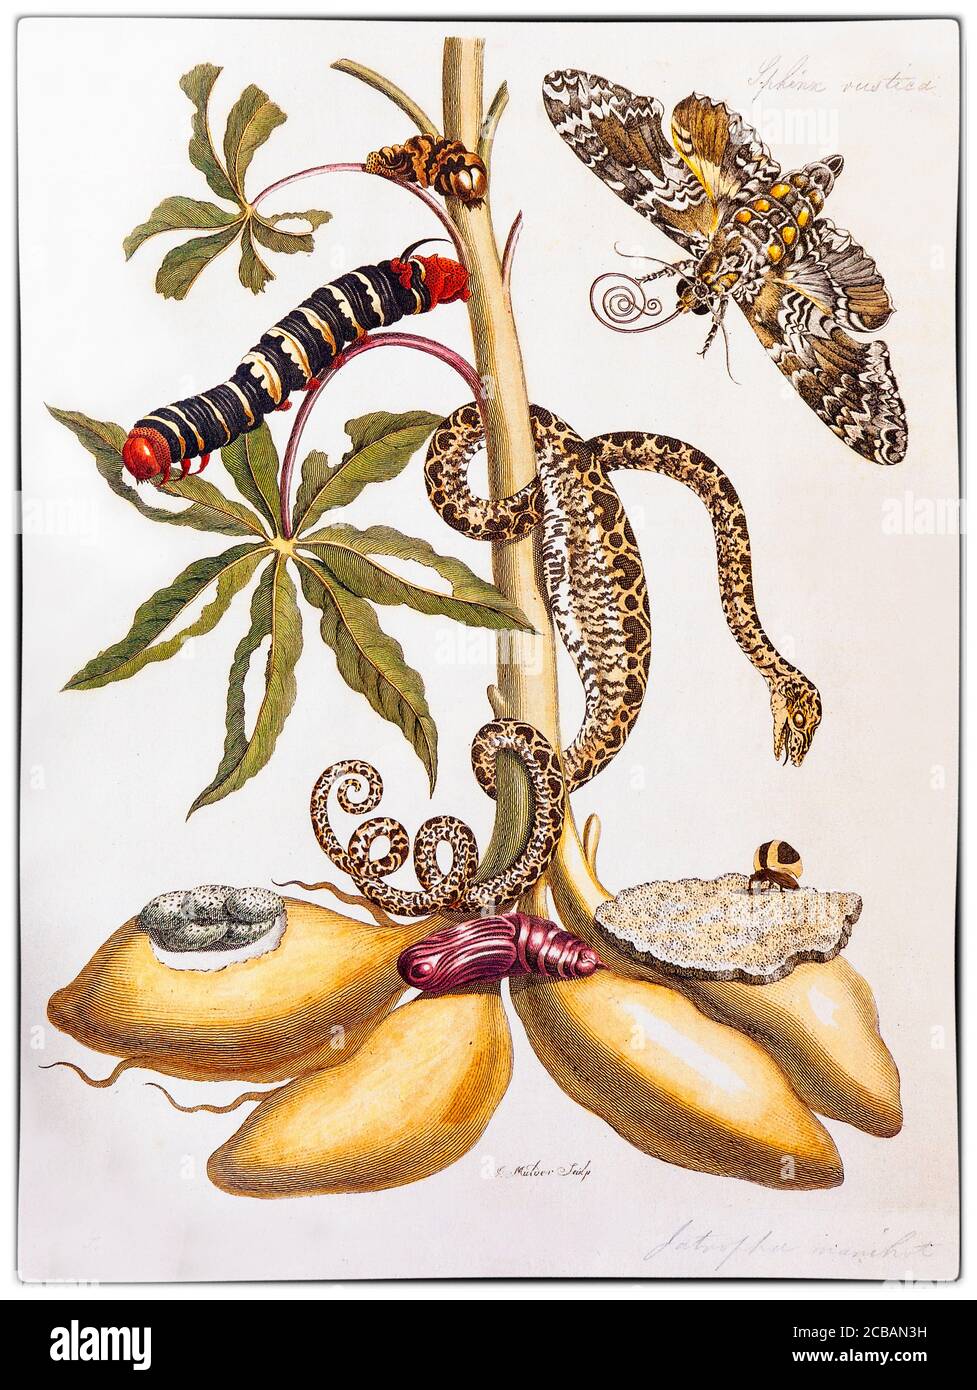 Maria Sibylla Merian (1647-1717) è stata una . Merian fu uno dei primi naturalisti europei ad osservare direttamente gli insetti. L'illustrazione mostra Manihot esculenta, comunemente chiamato manioca, un arbusto boscoso originario del Sud America della famiglia degli spurli, Euphorbiaceae con un serpente e Moth Metamorfosi dell'artista 'Metamorphosis Insectorum Surinamensium' Foto Stock